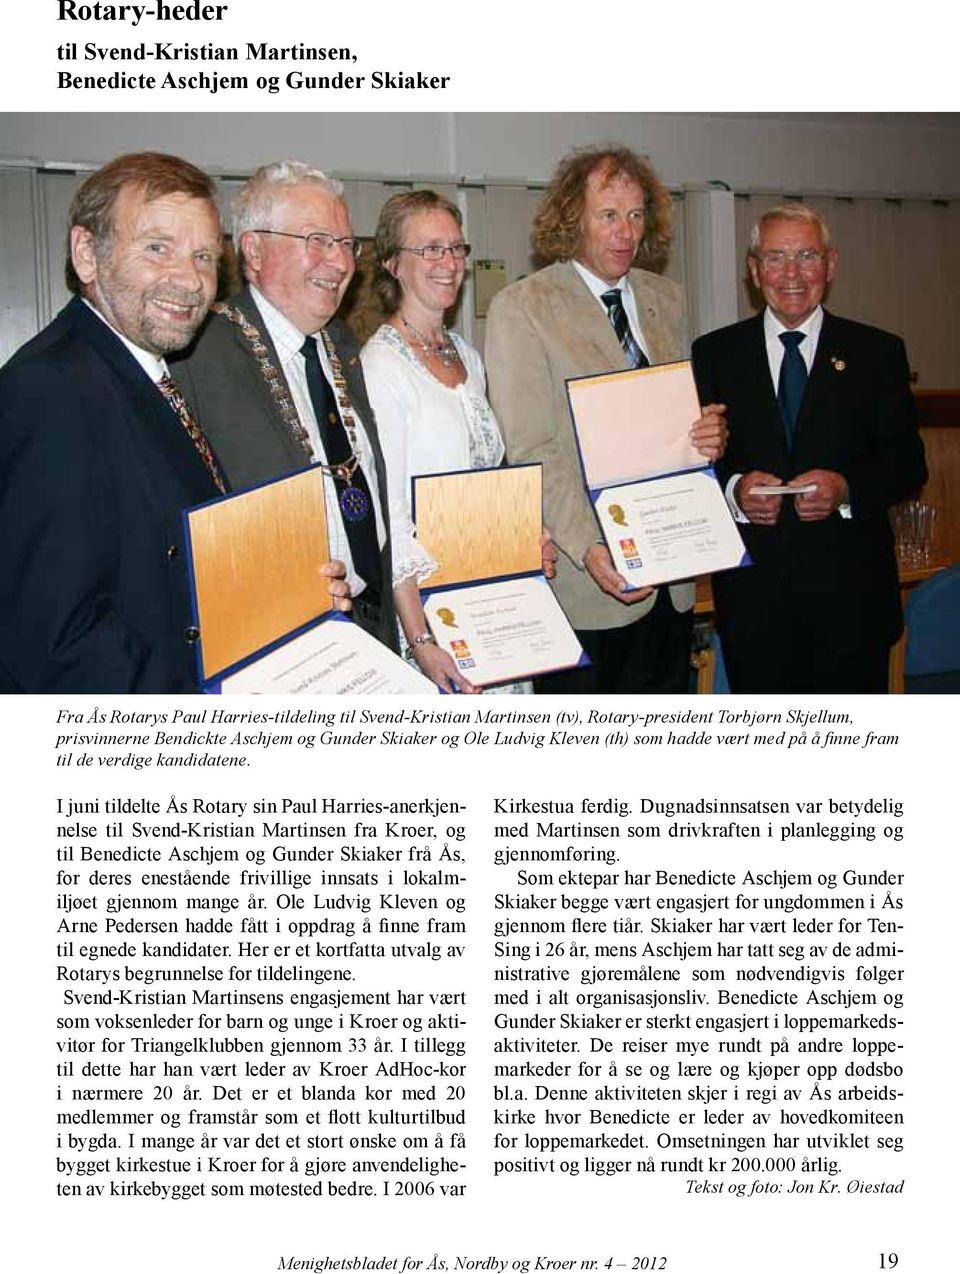 I juni tildelte Ås Rotary sin Paul Harries-anerkjennelse til Svend-Kristian Martinsen fra Kroer, og til Benedicte Aschjem og Gunder Skiaker frå Ås, for deres enestående frivillige innsats i